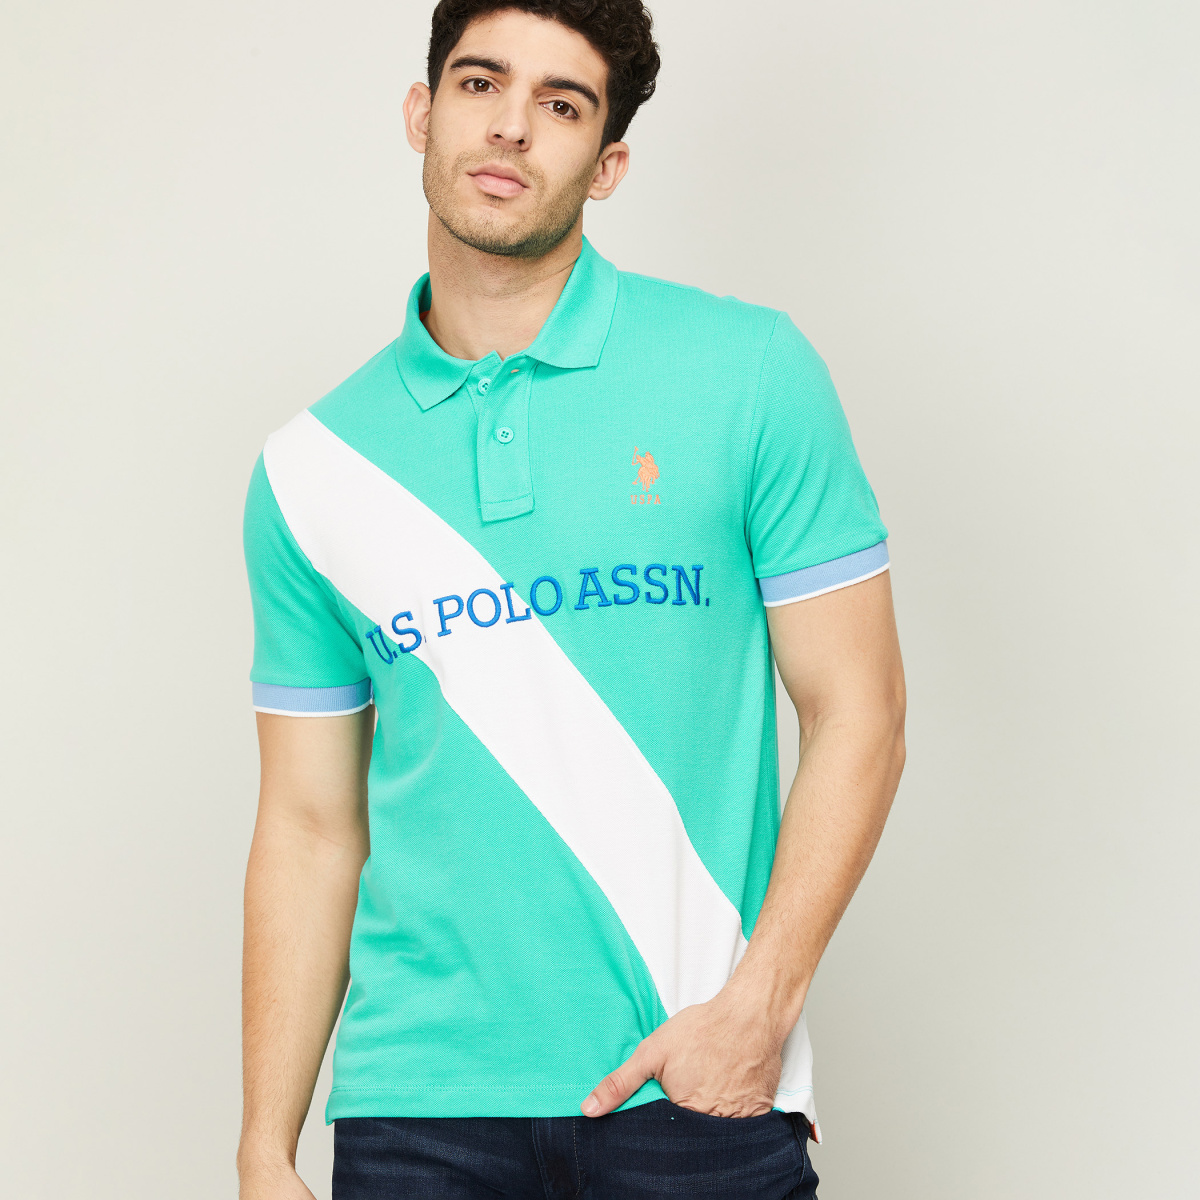 U.S. POLO ASSN. Men Printed Polo T-shirt